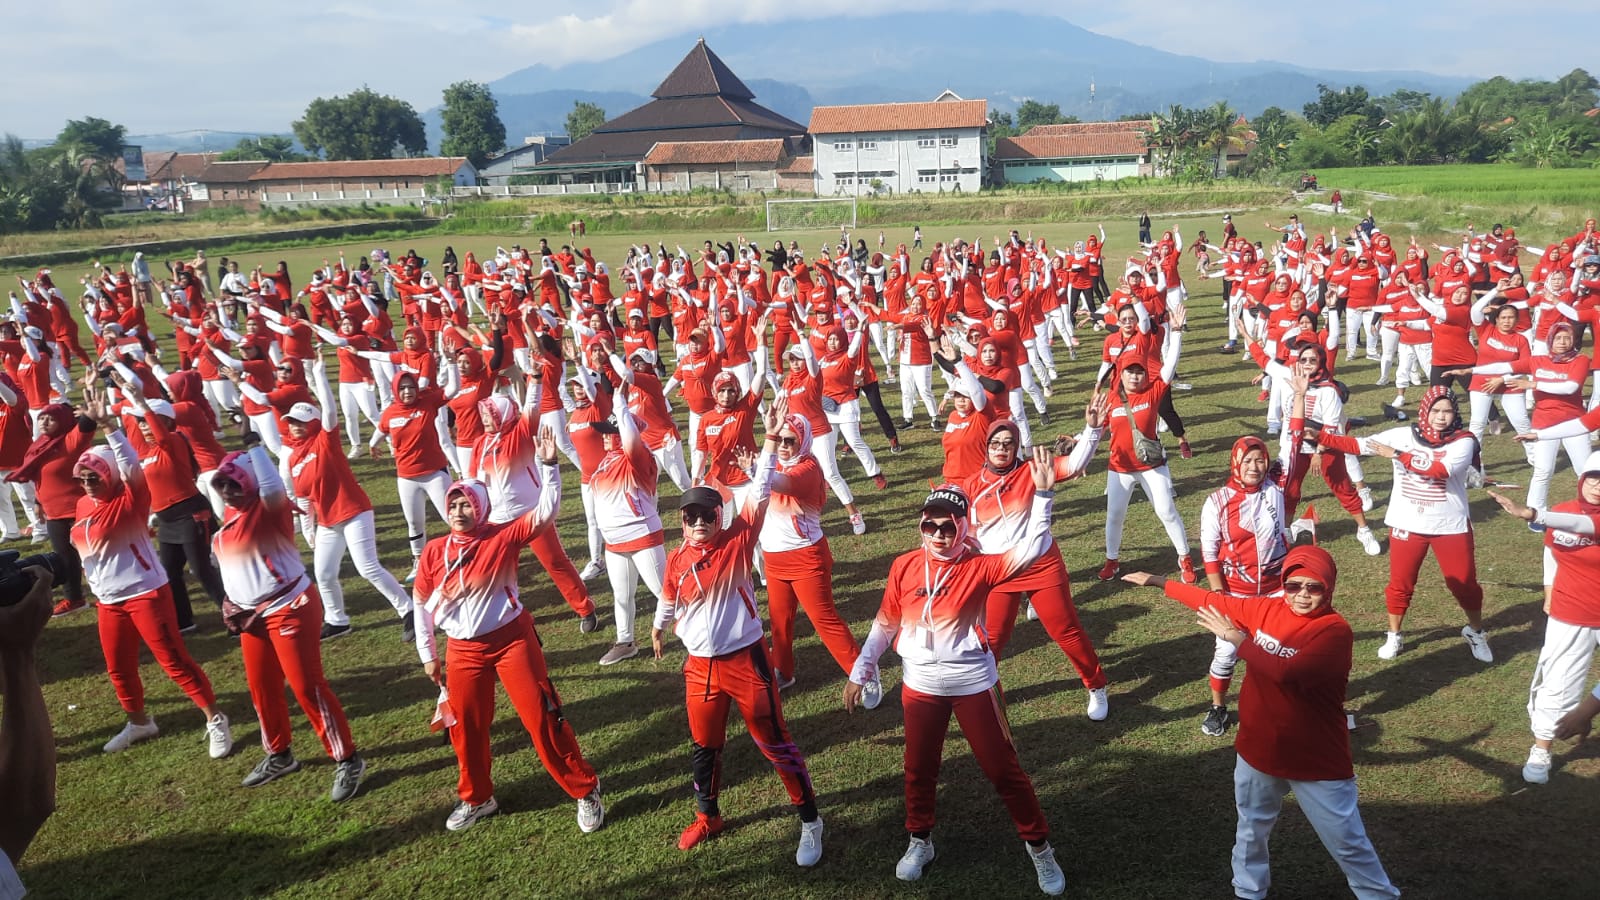 Senam Gebyar Merah Putih Sambut HUT RI ke 77 di Dukupuntang Cirebon, Masyarakat Antusias